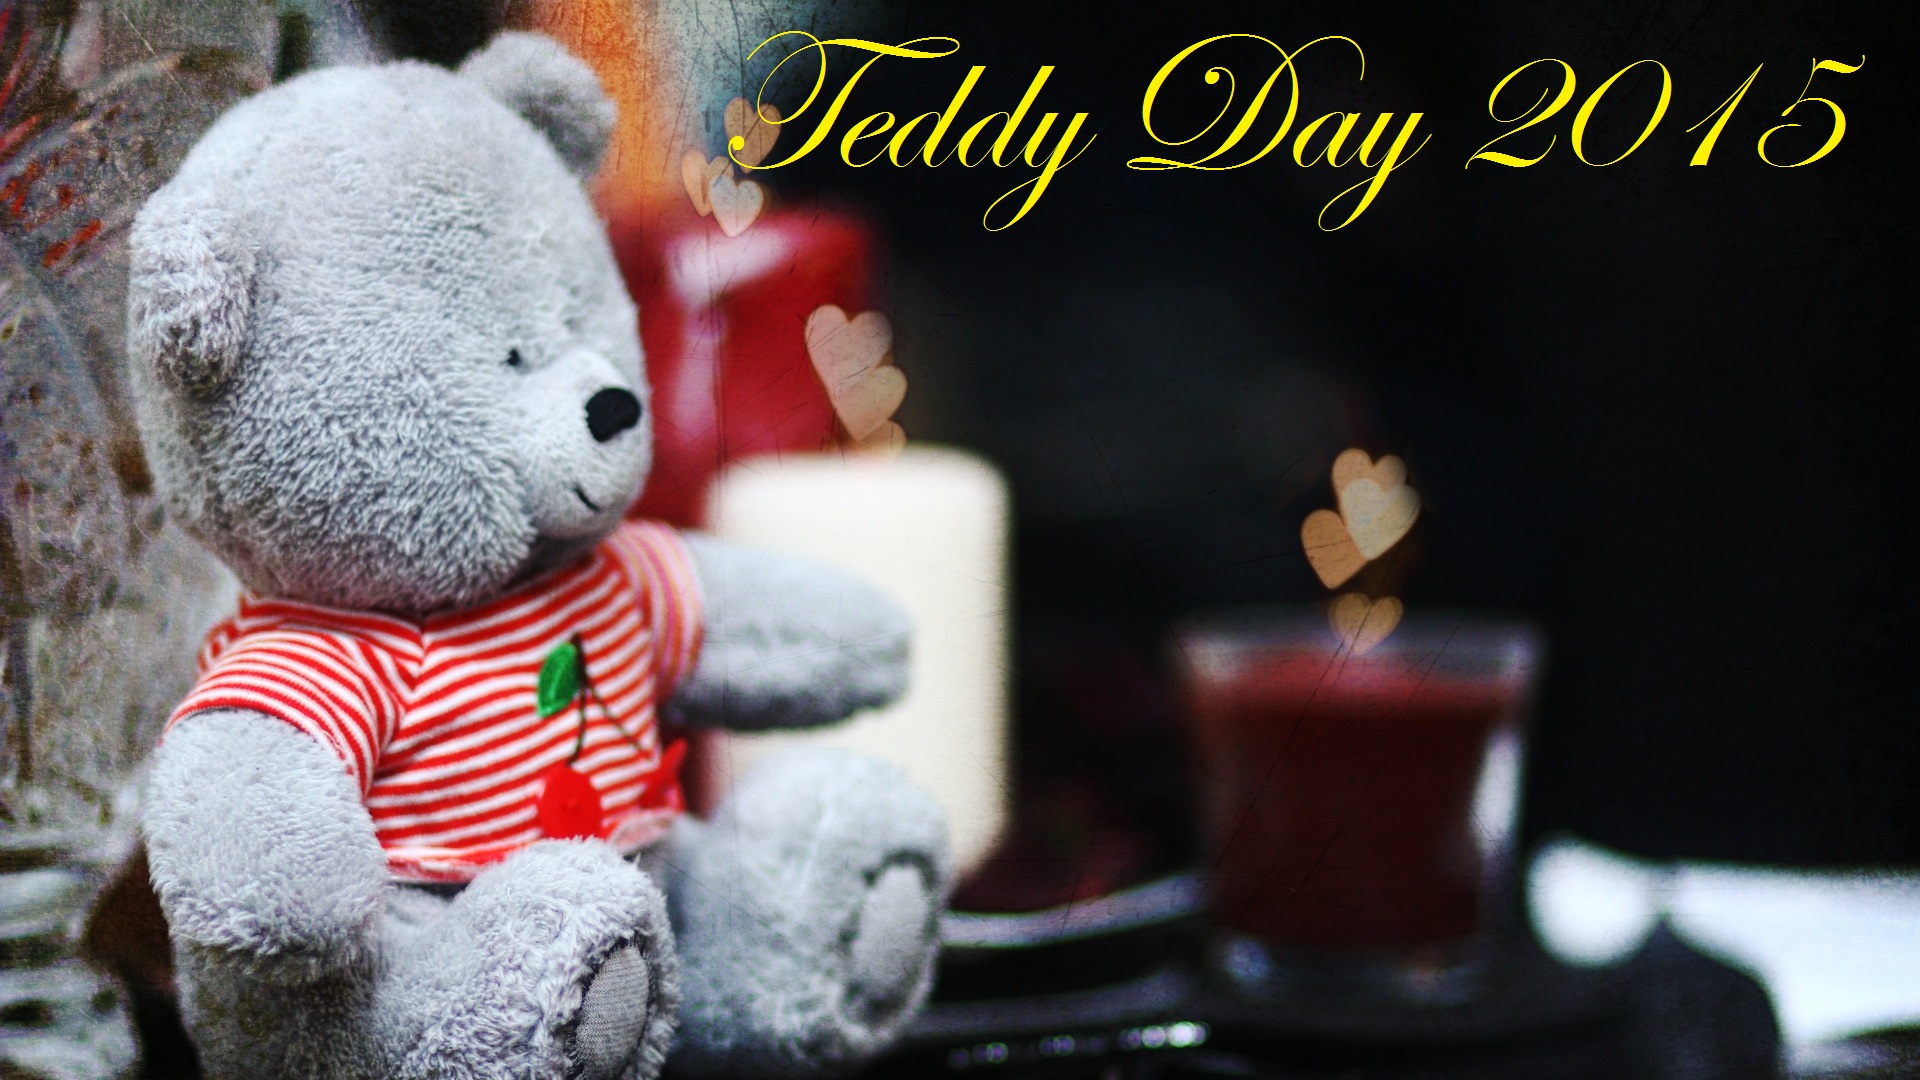 Happy Teddy Day Cute Teddy Bear Images Hd Wallpapers - Cute Hd Wallpaper Teddy Bear - HD Wallpaper 